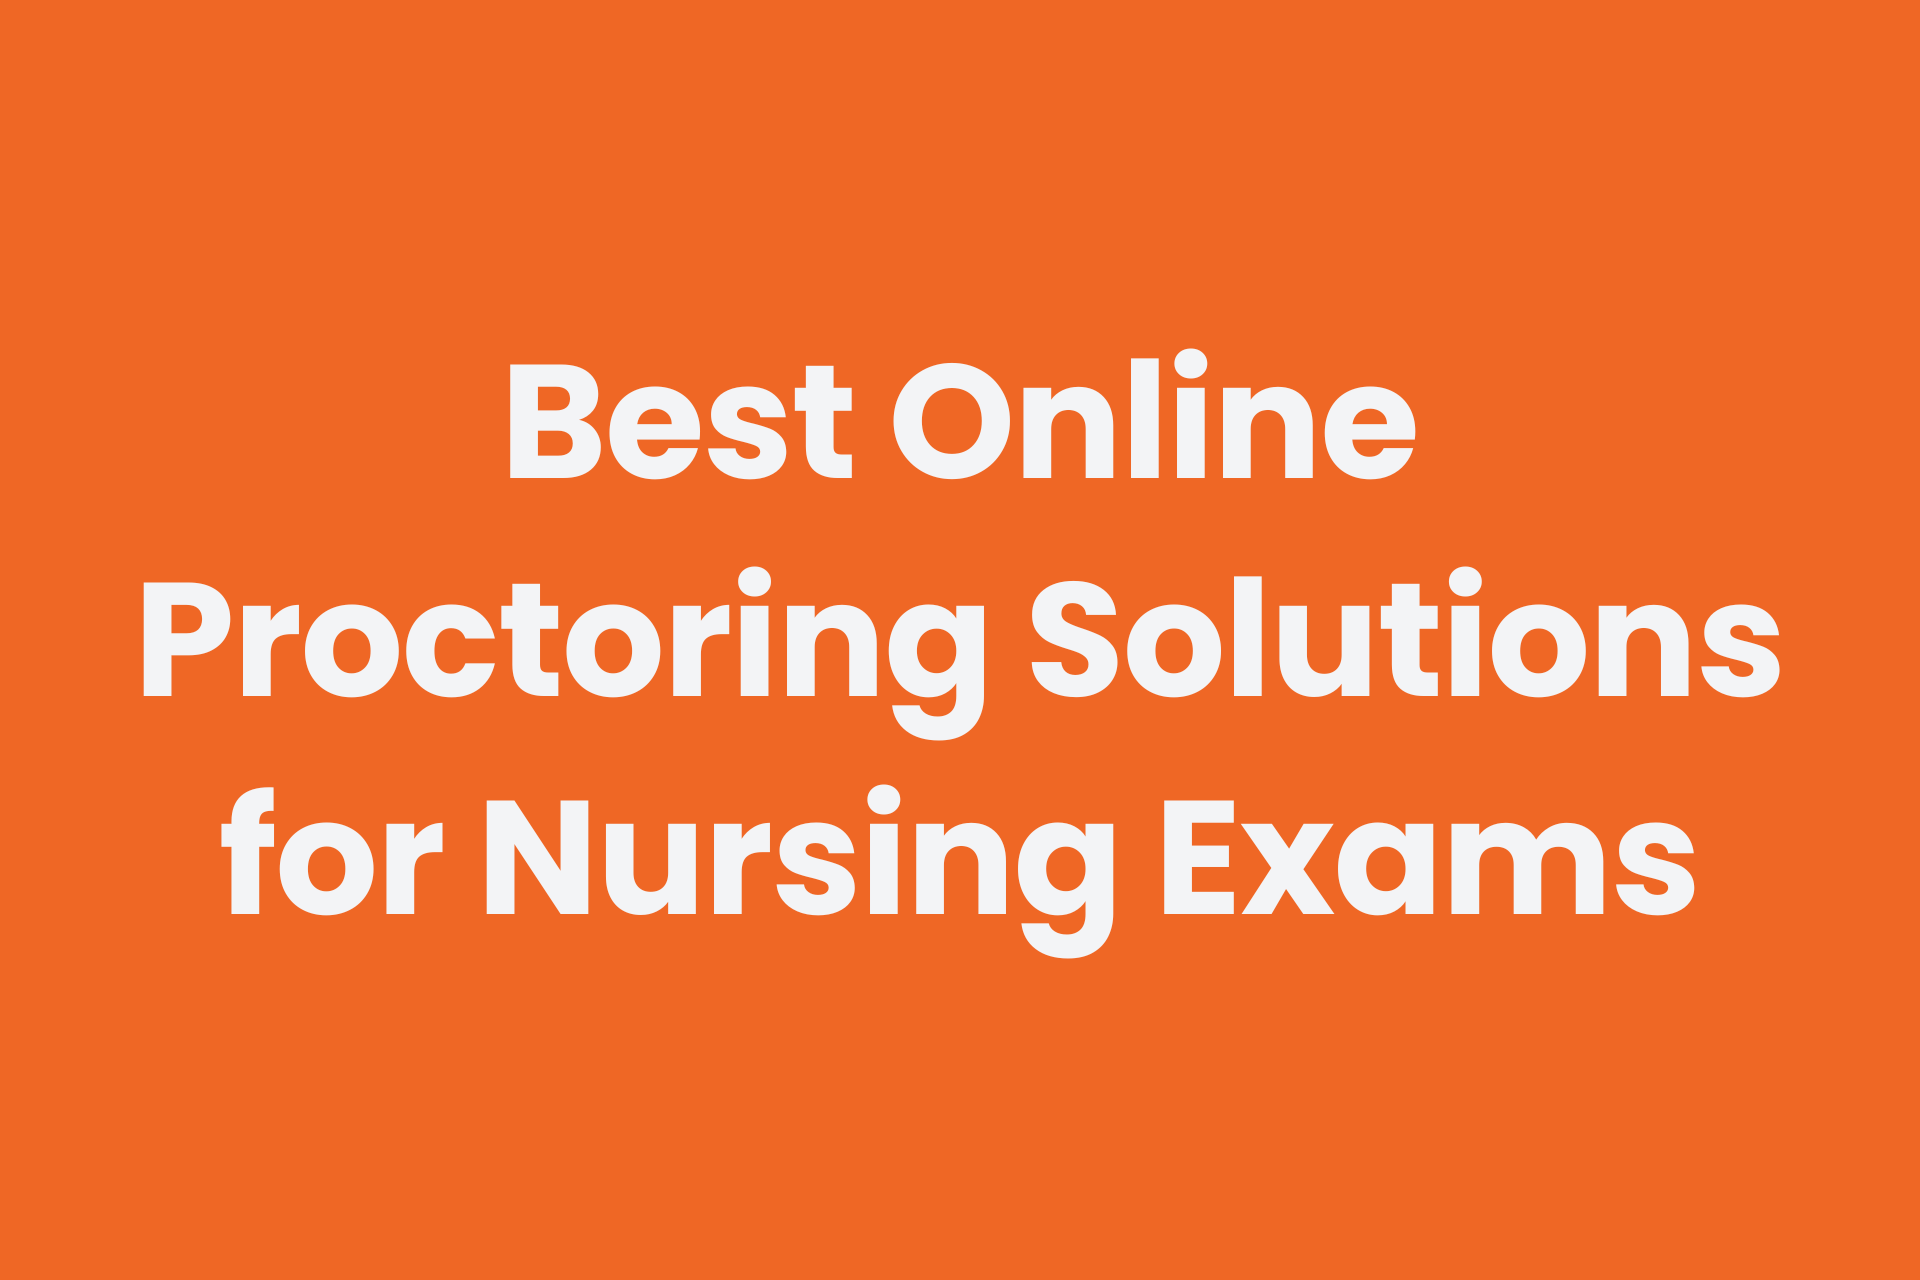 Best online proctoring solution for online nursing program exams